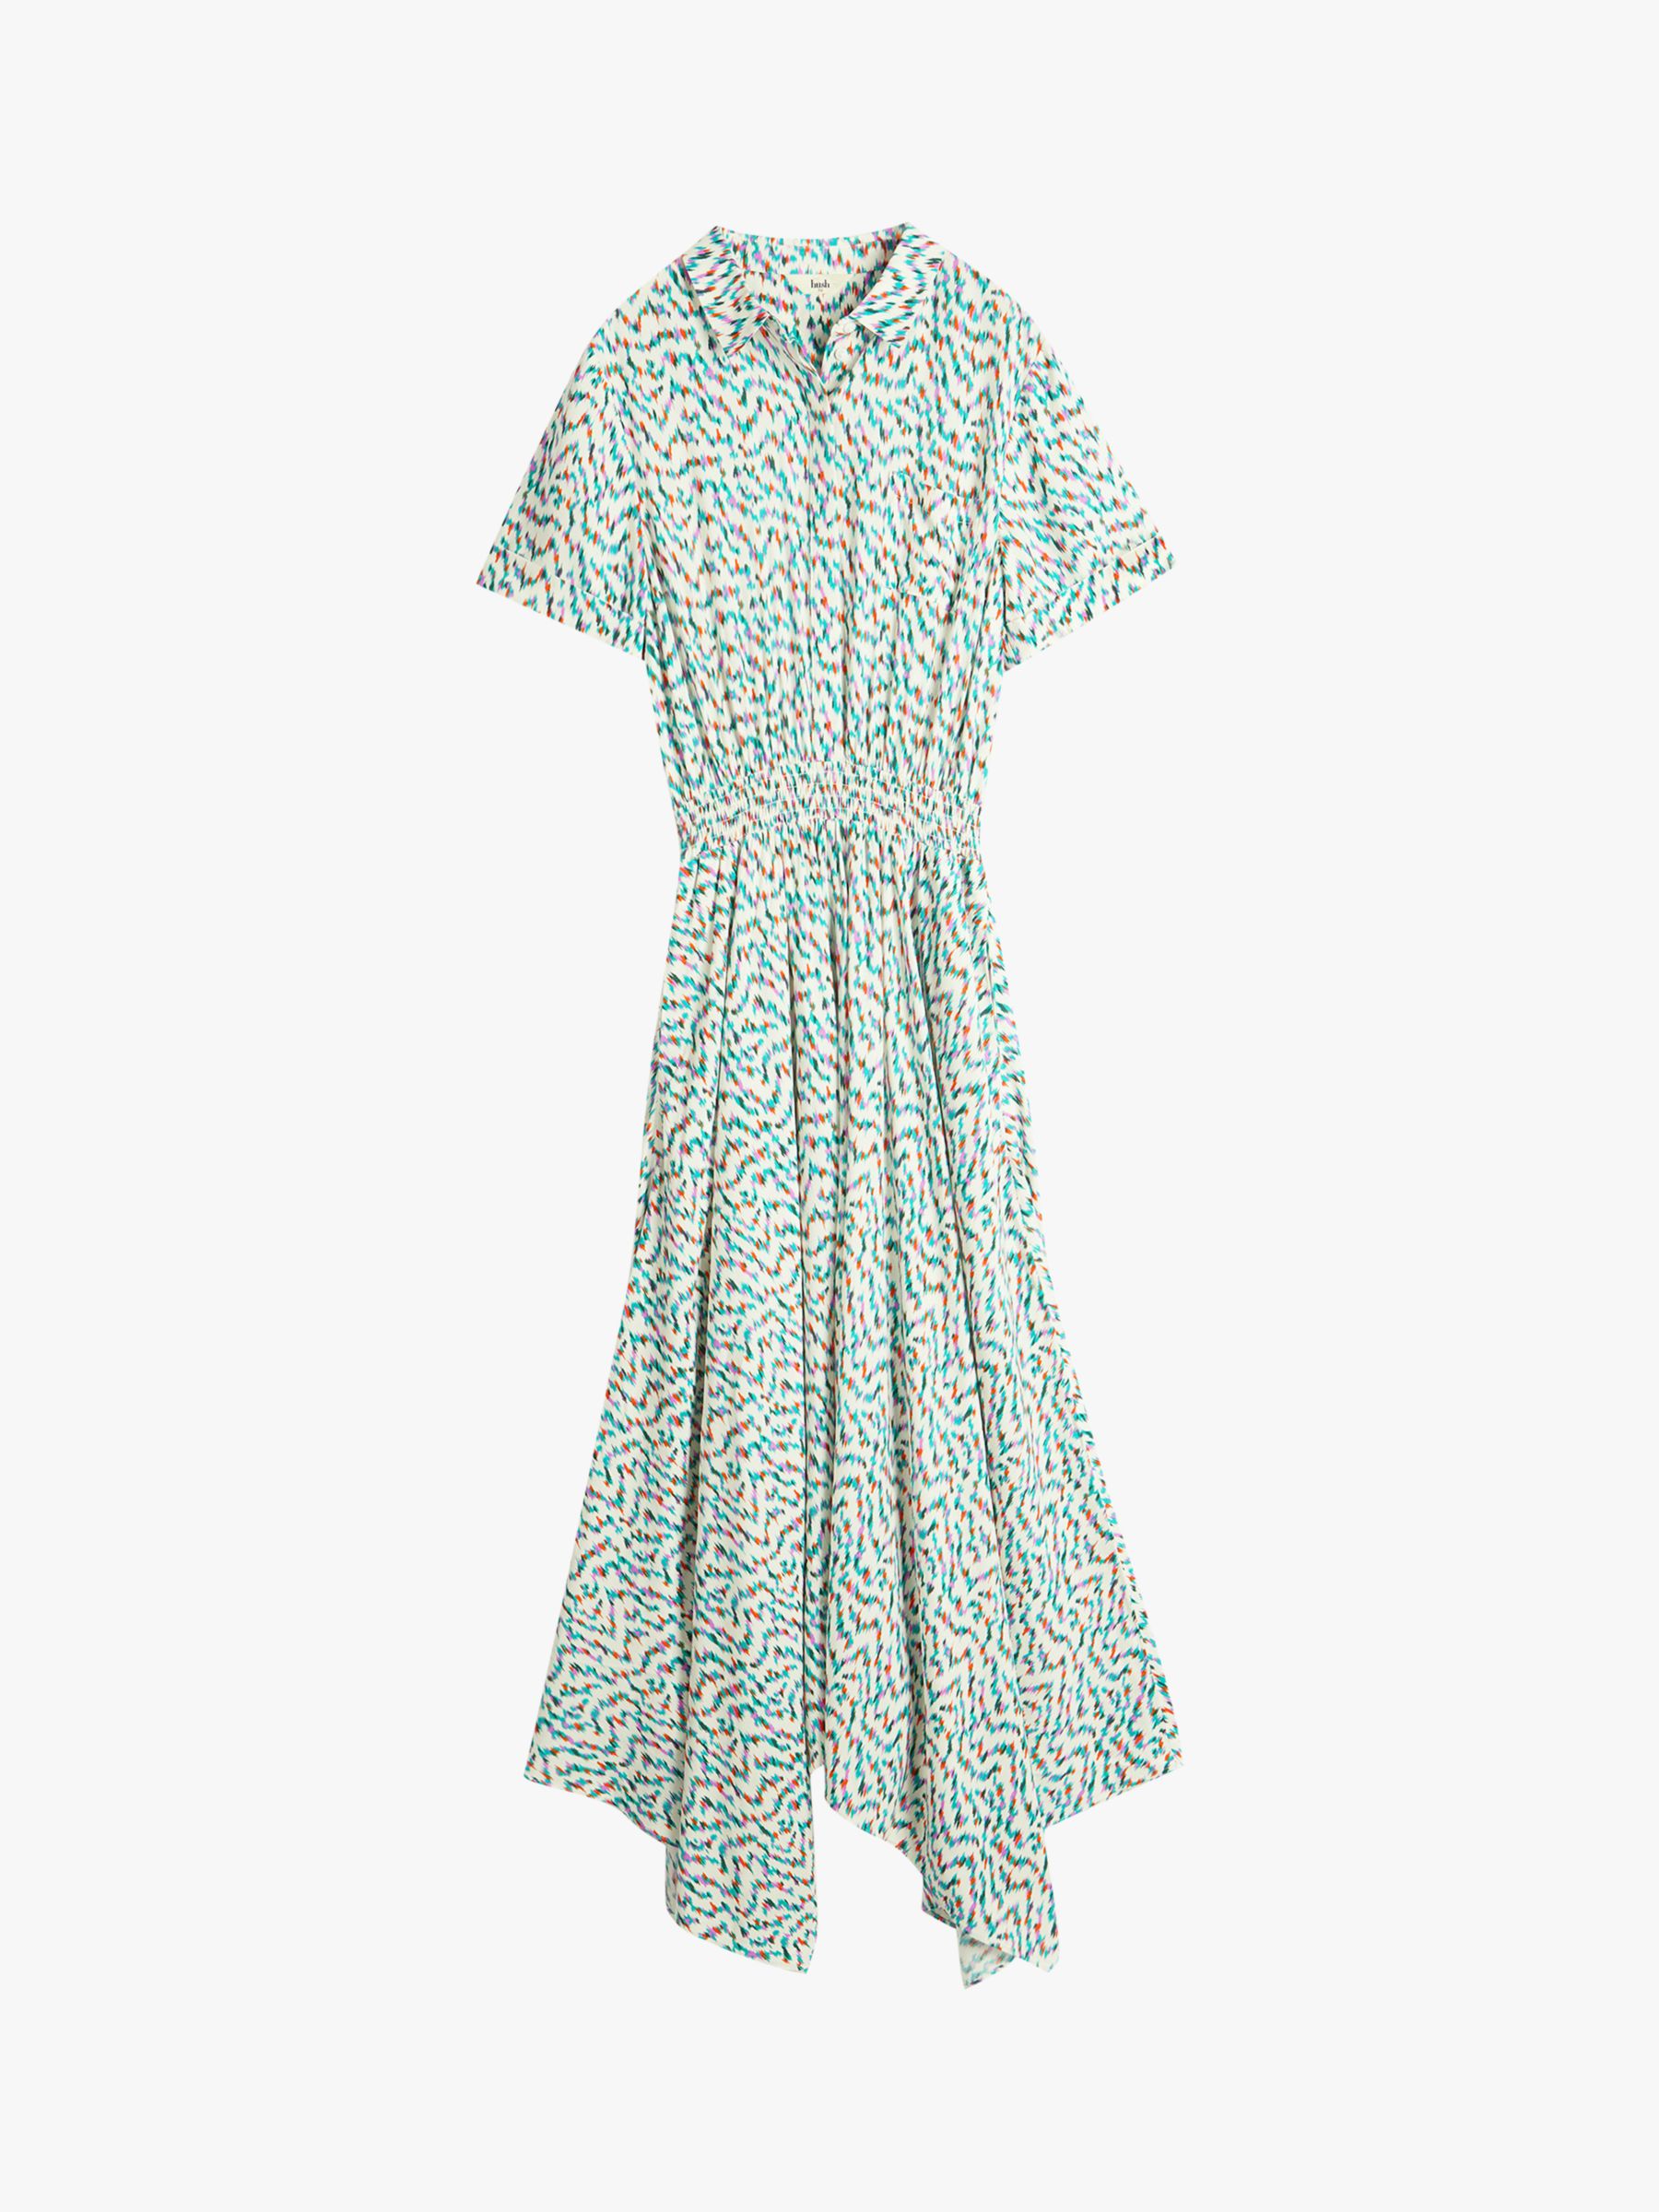 HUSH Kensington Shirt Dress, Multi, 10